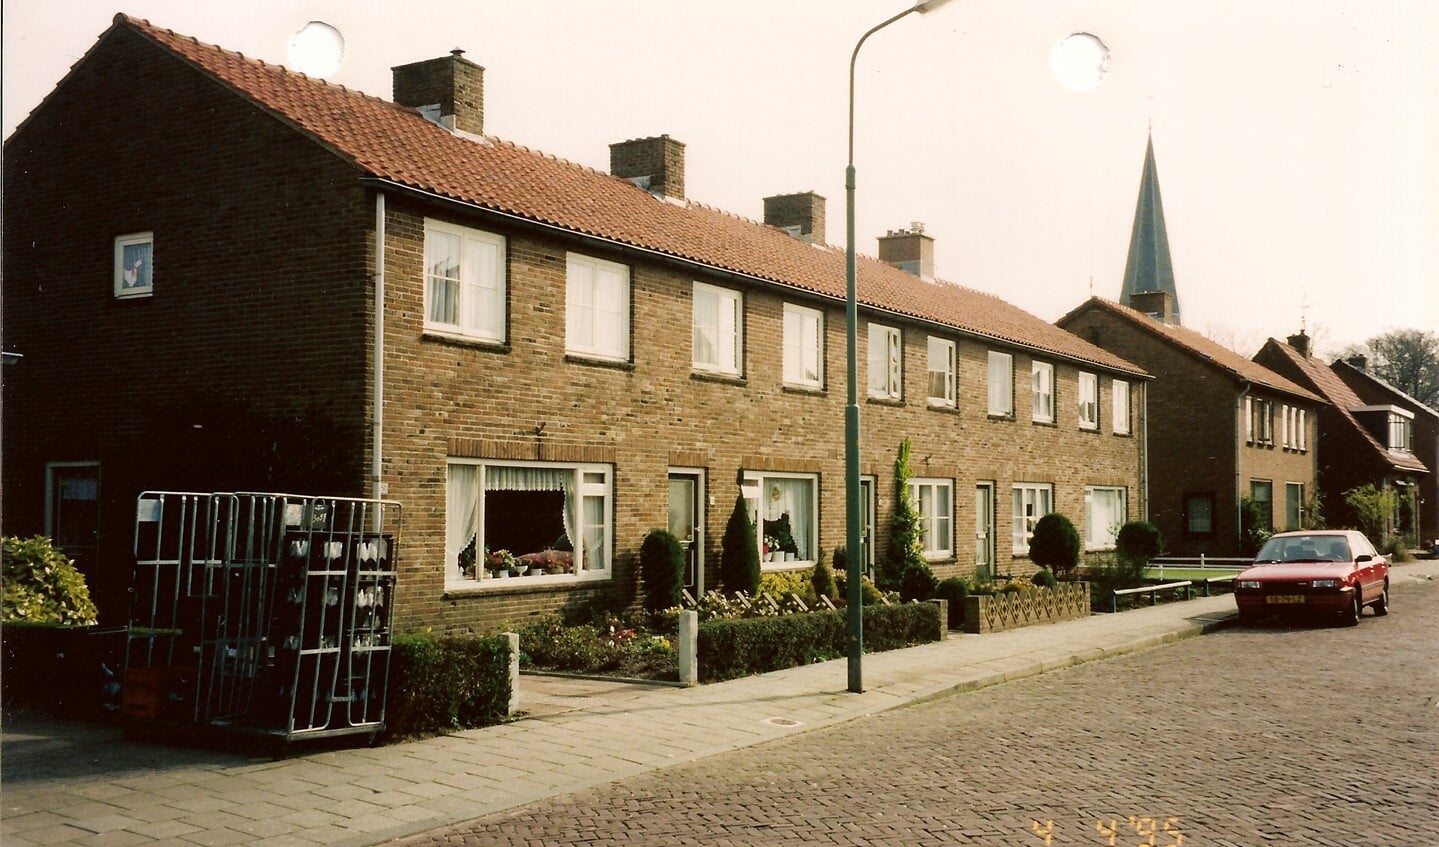 Blokje van 5 huizen die rond 1950 zijn gebouwd 